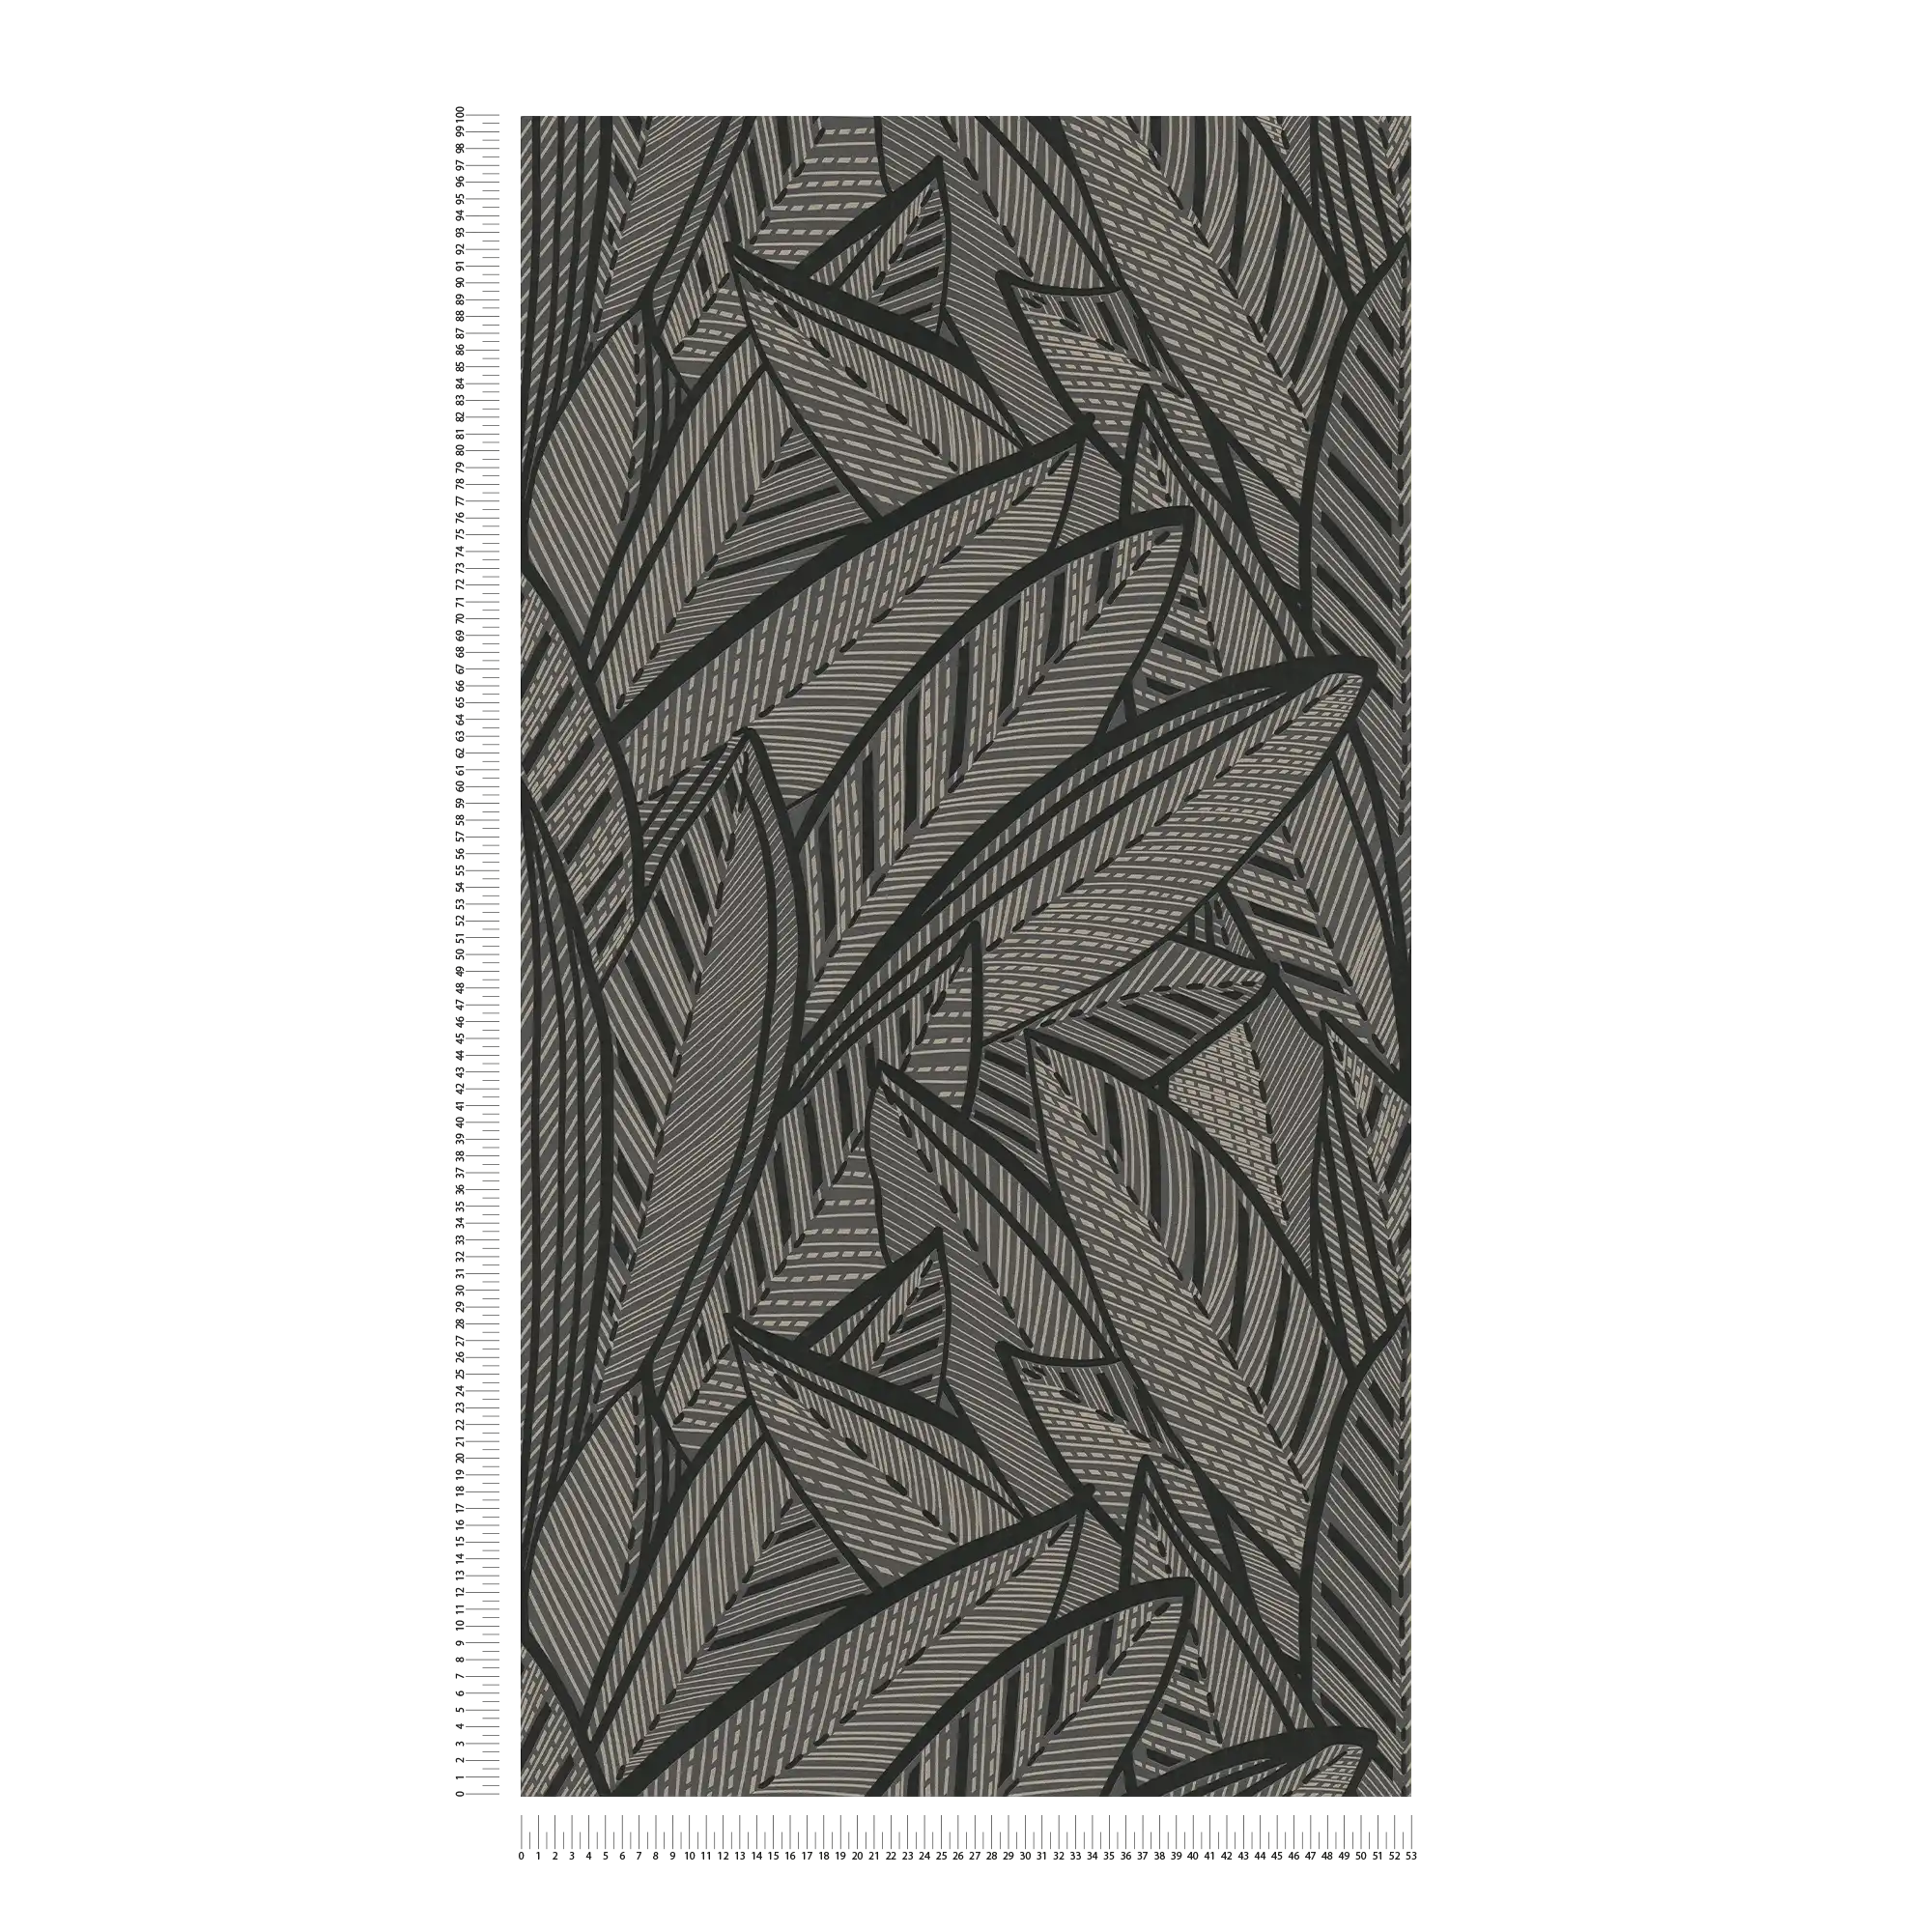             Dschungel Vliestapete mit Blättermotiv und Glanzeffekten – Schwarz, Metallic
        